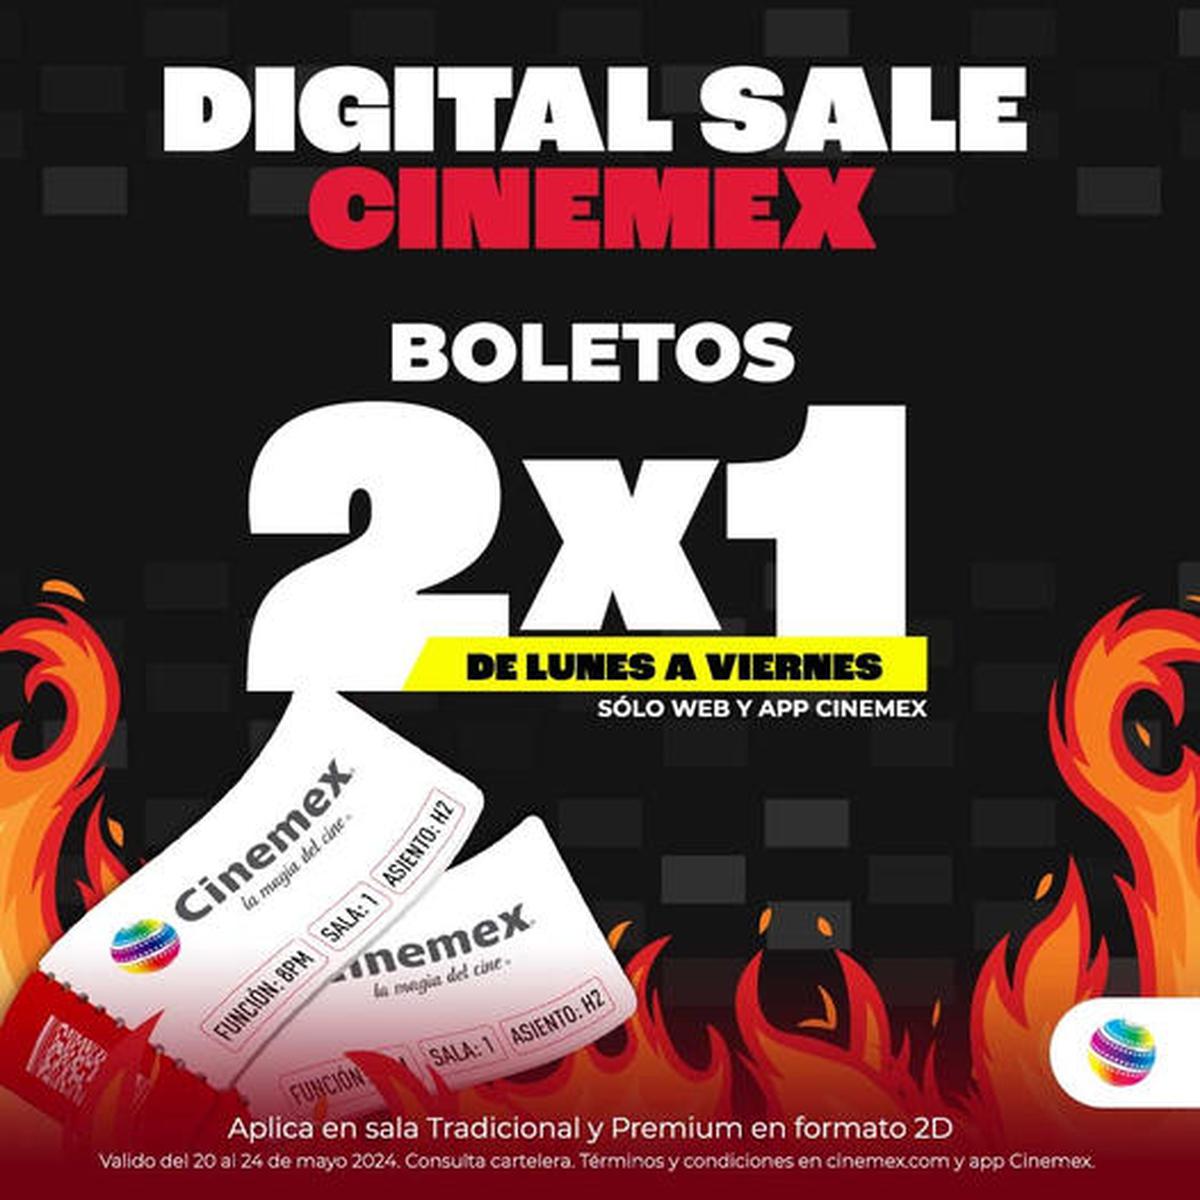 Boletos de cine al 2x1 | Una promoción que no puedes dejar pasar este mes de Mayo (Cinemex).